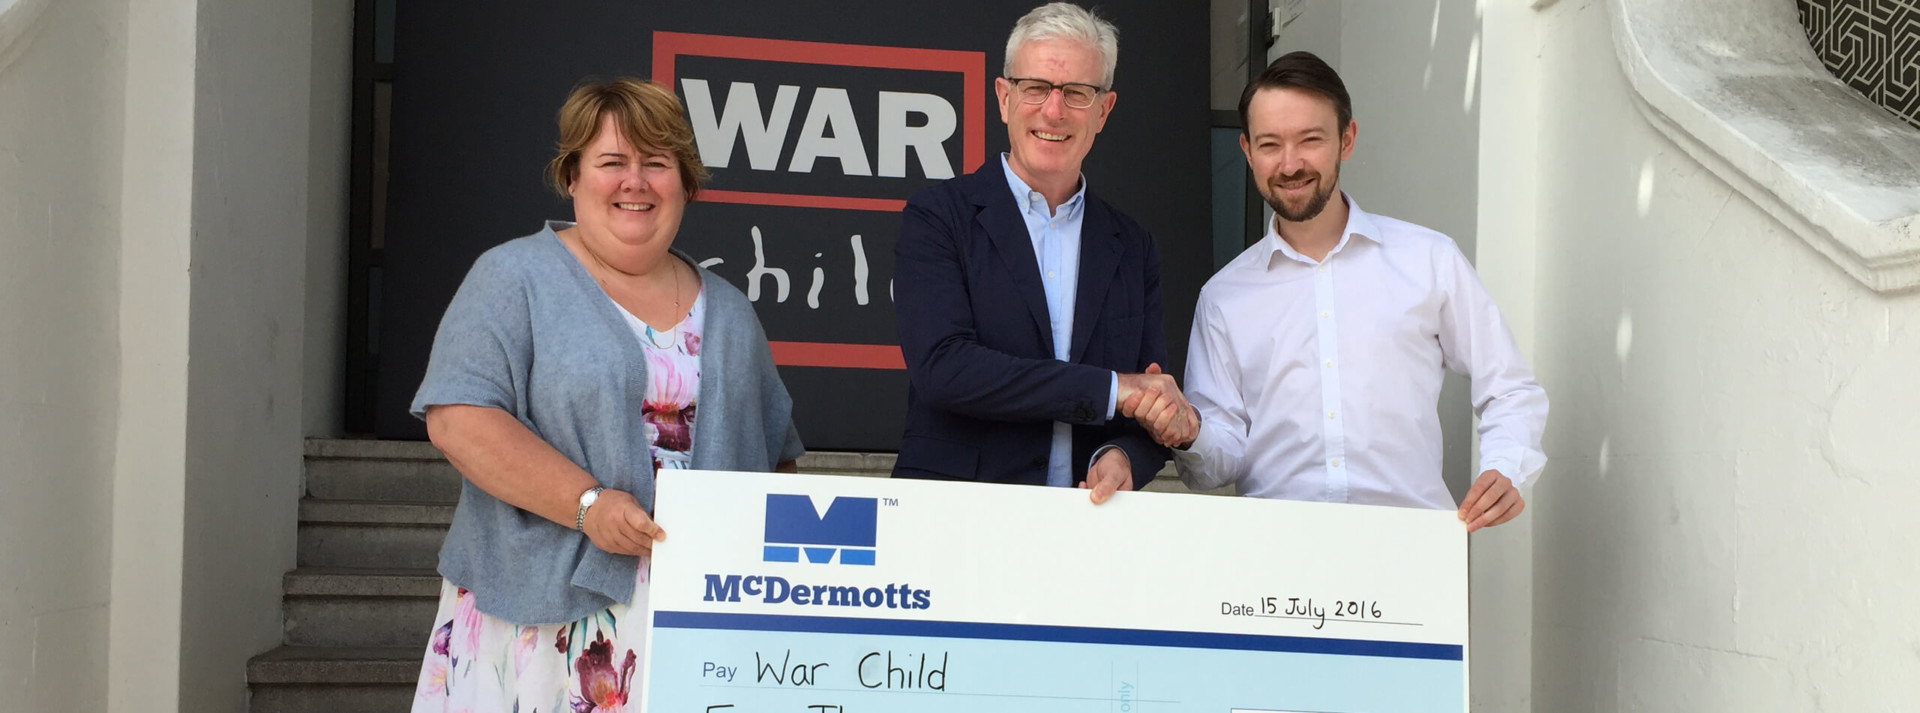 McDermotts has donated £5,000 to international children's charity, War Child.